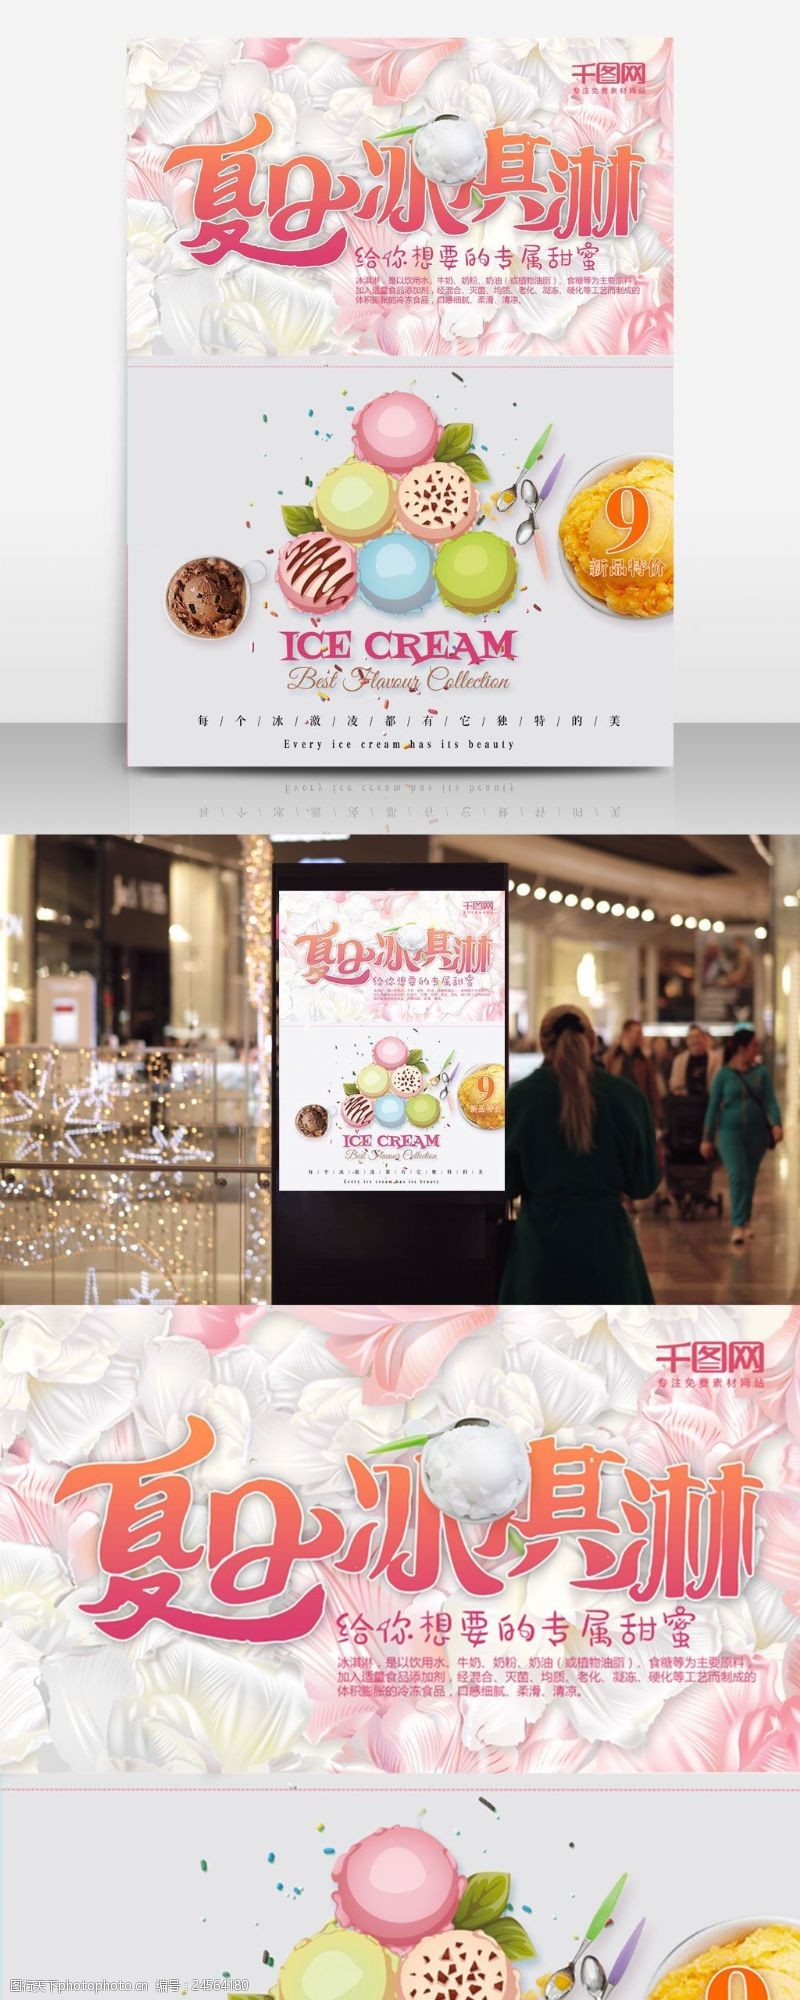 cream夏日冰淇淋海报设计